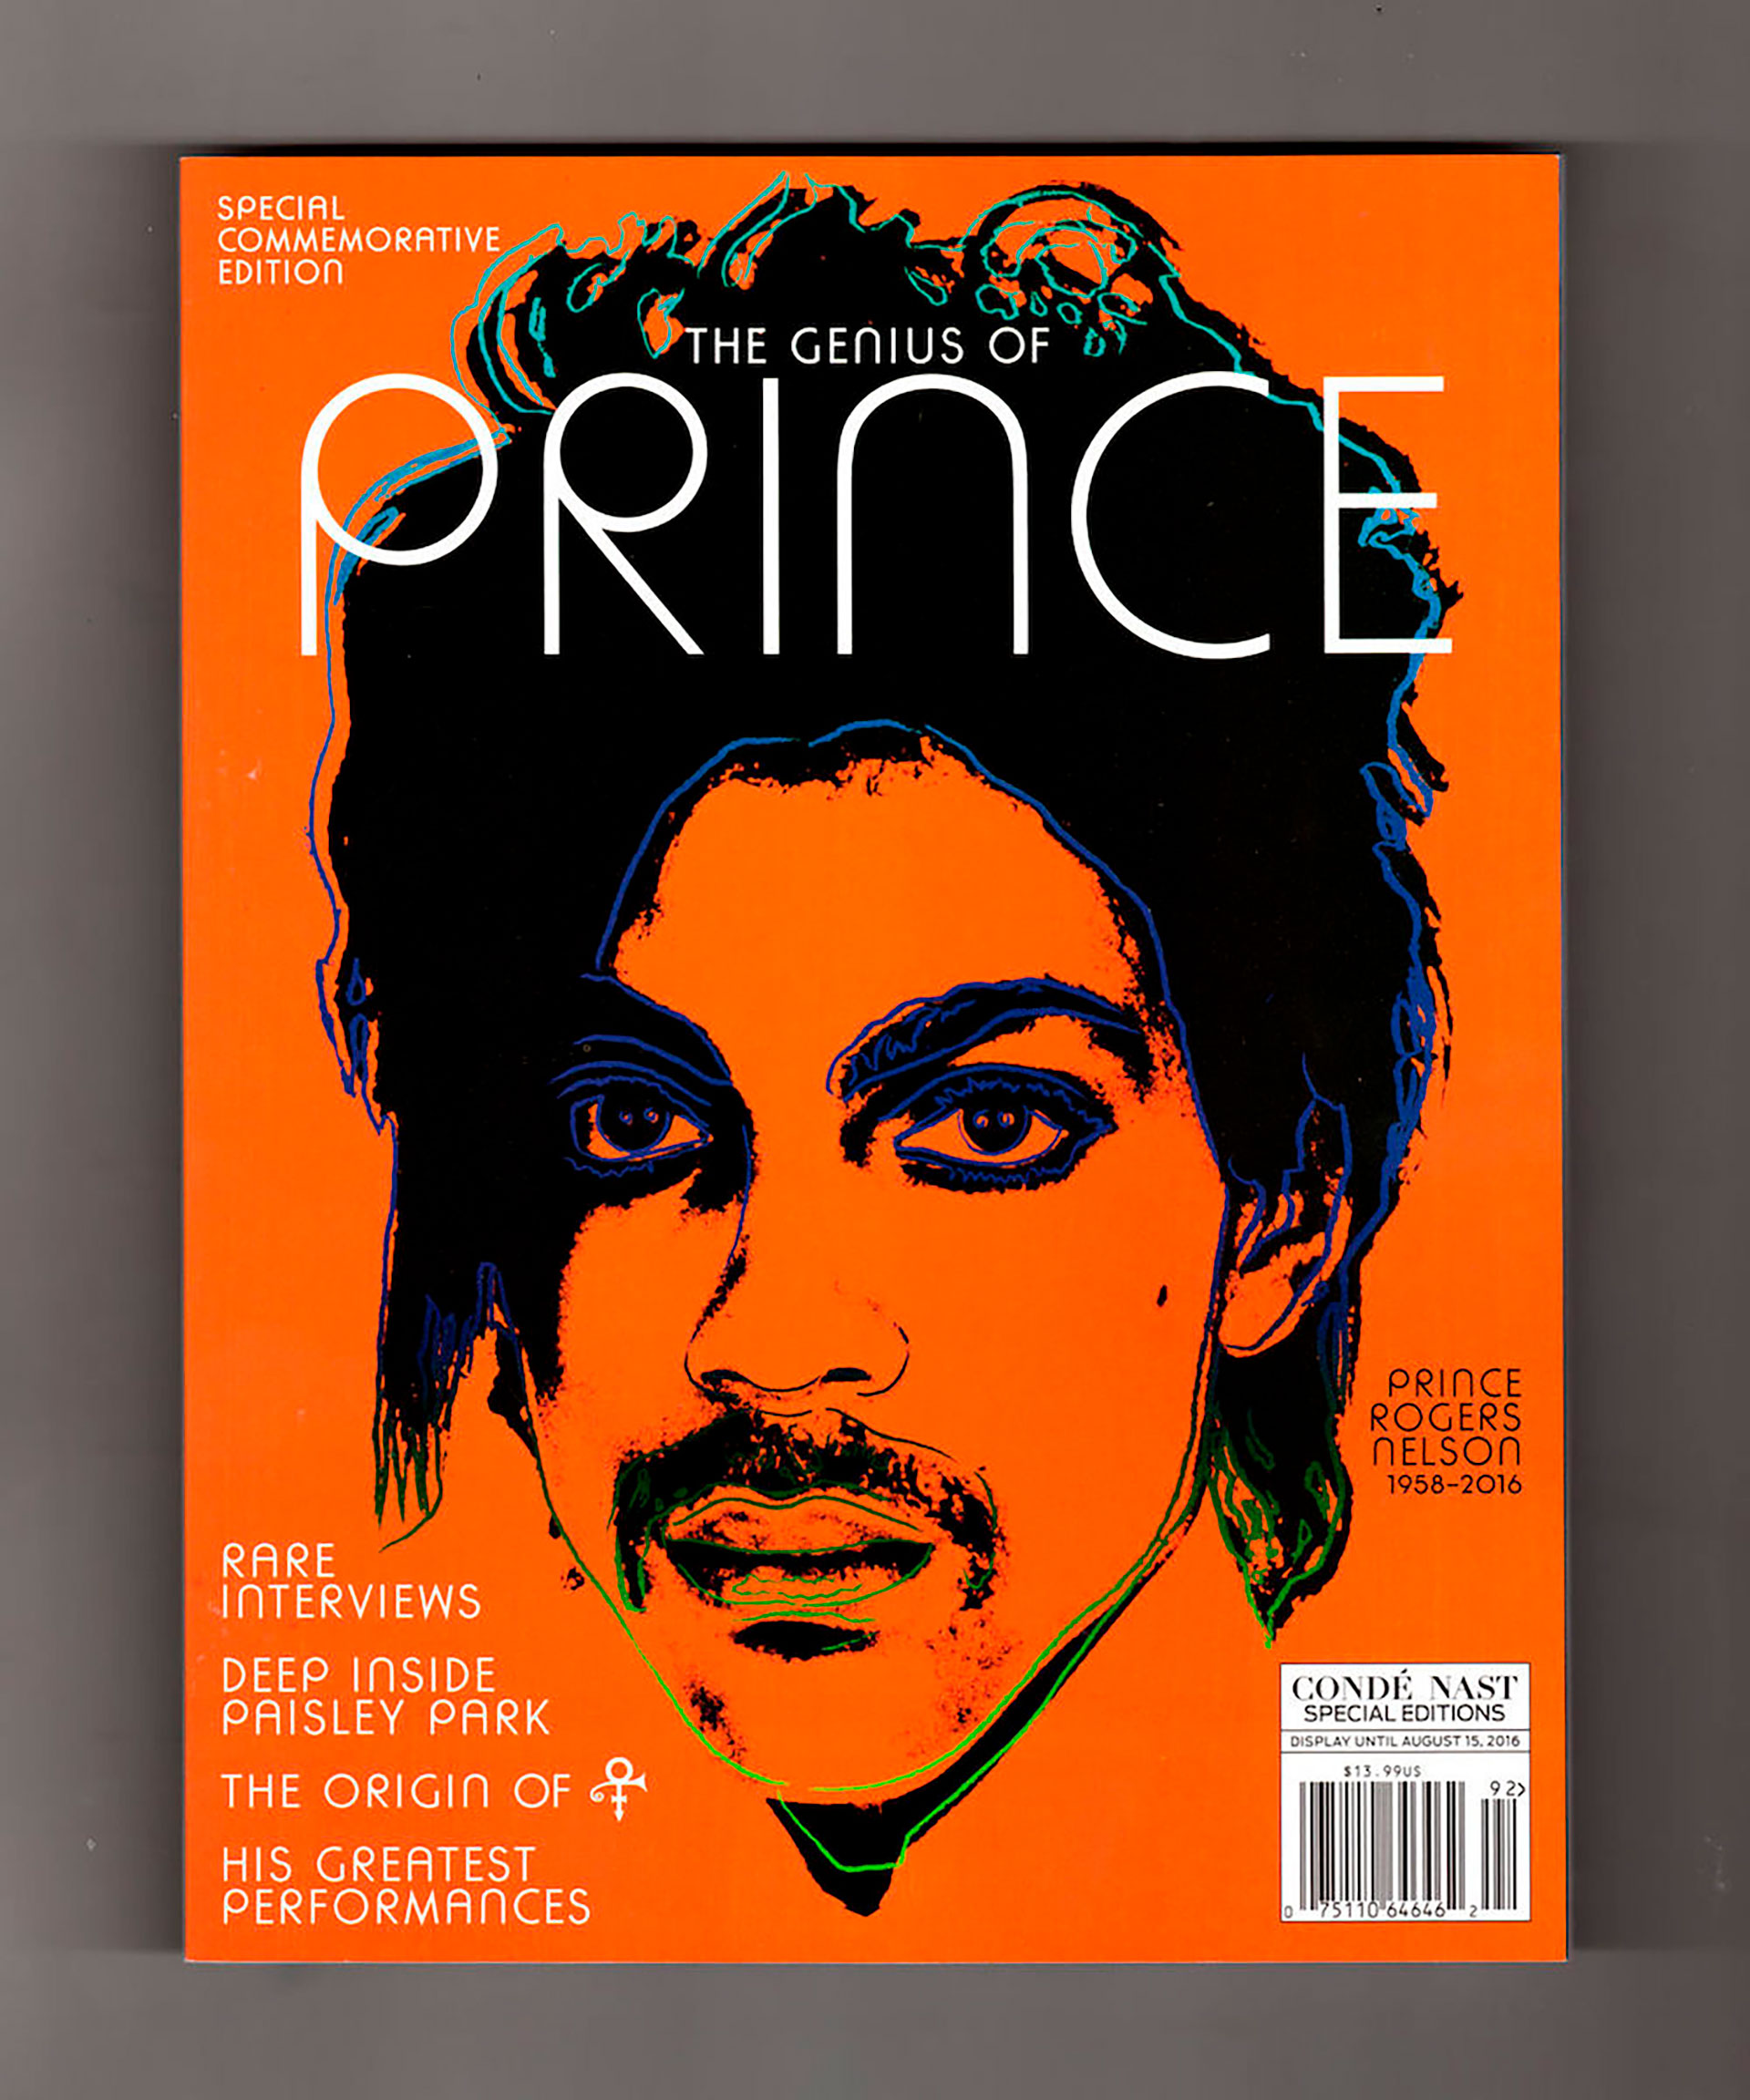 La imagen de Prince publicada por Vanity Fair es una fotografía tomada por Lynn Goldsmith e intervenida por Andy Warhol